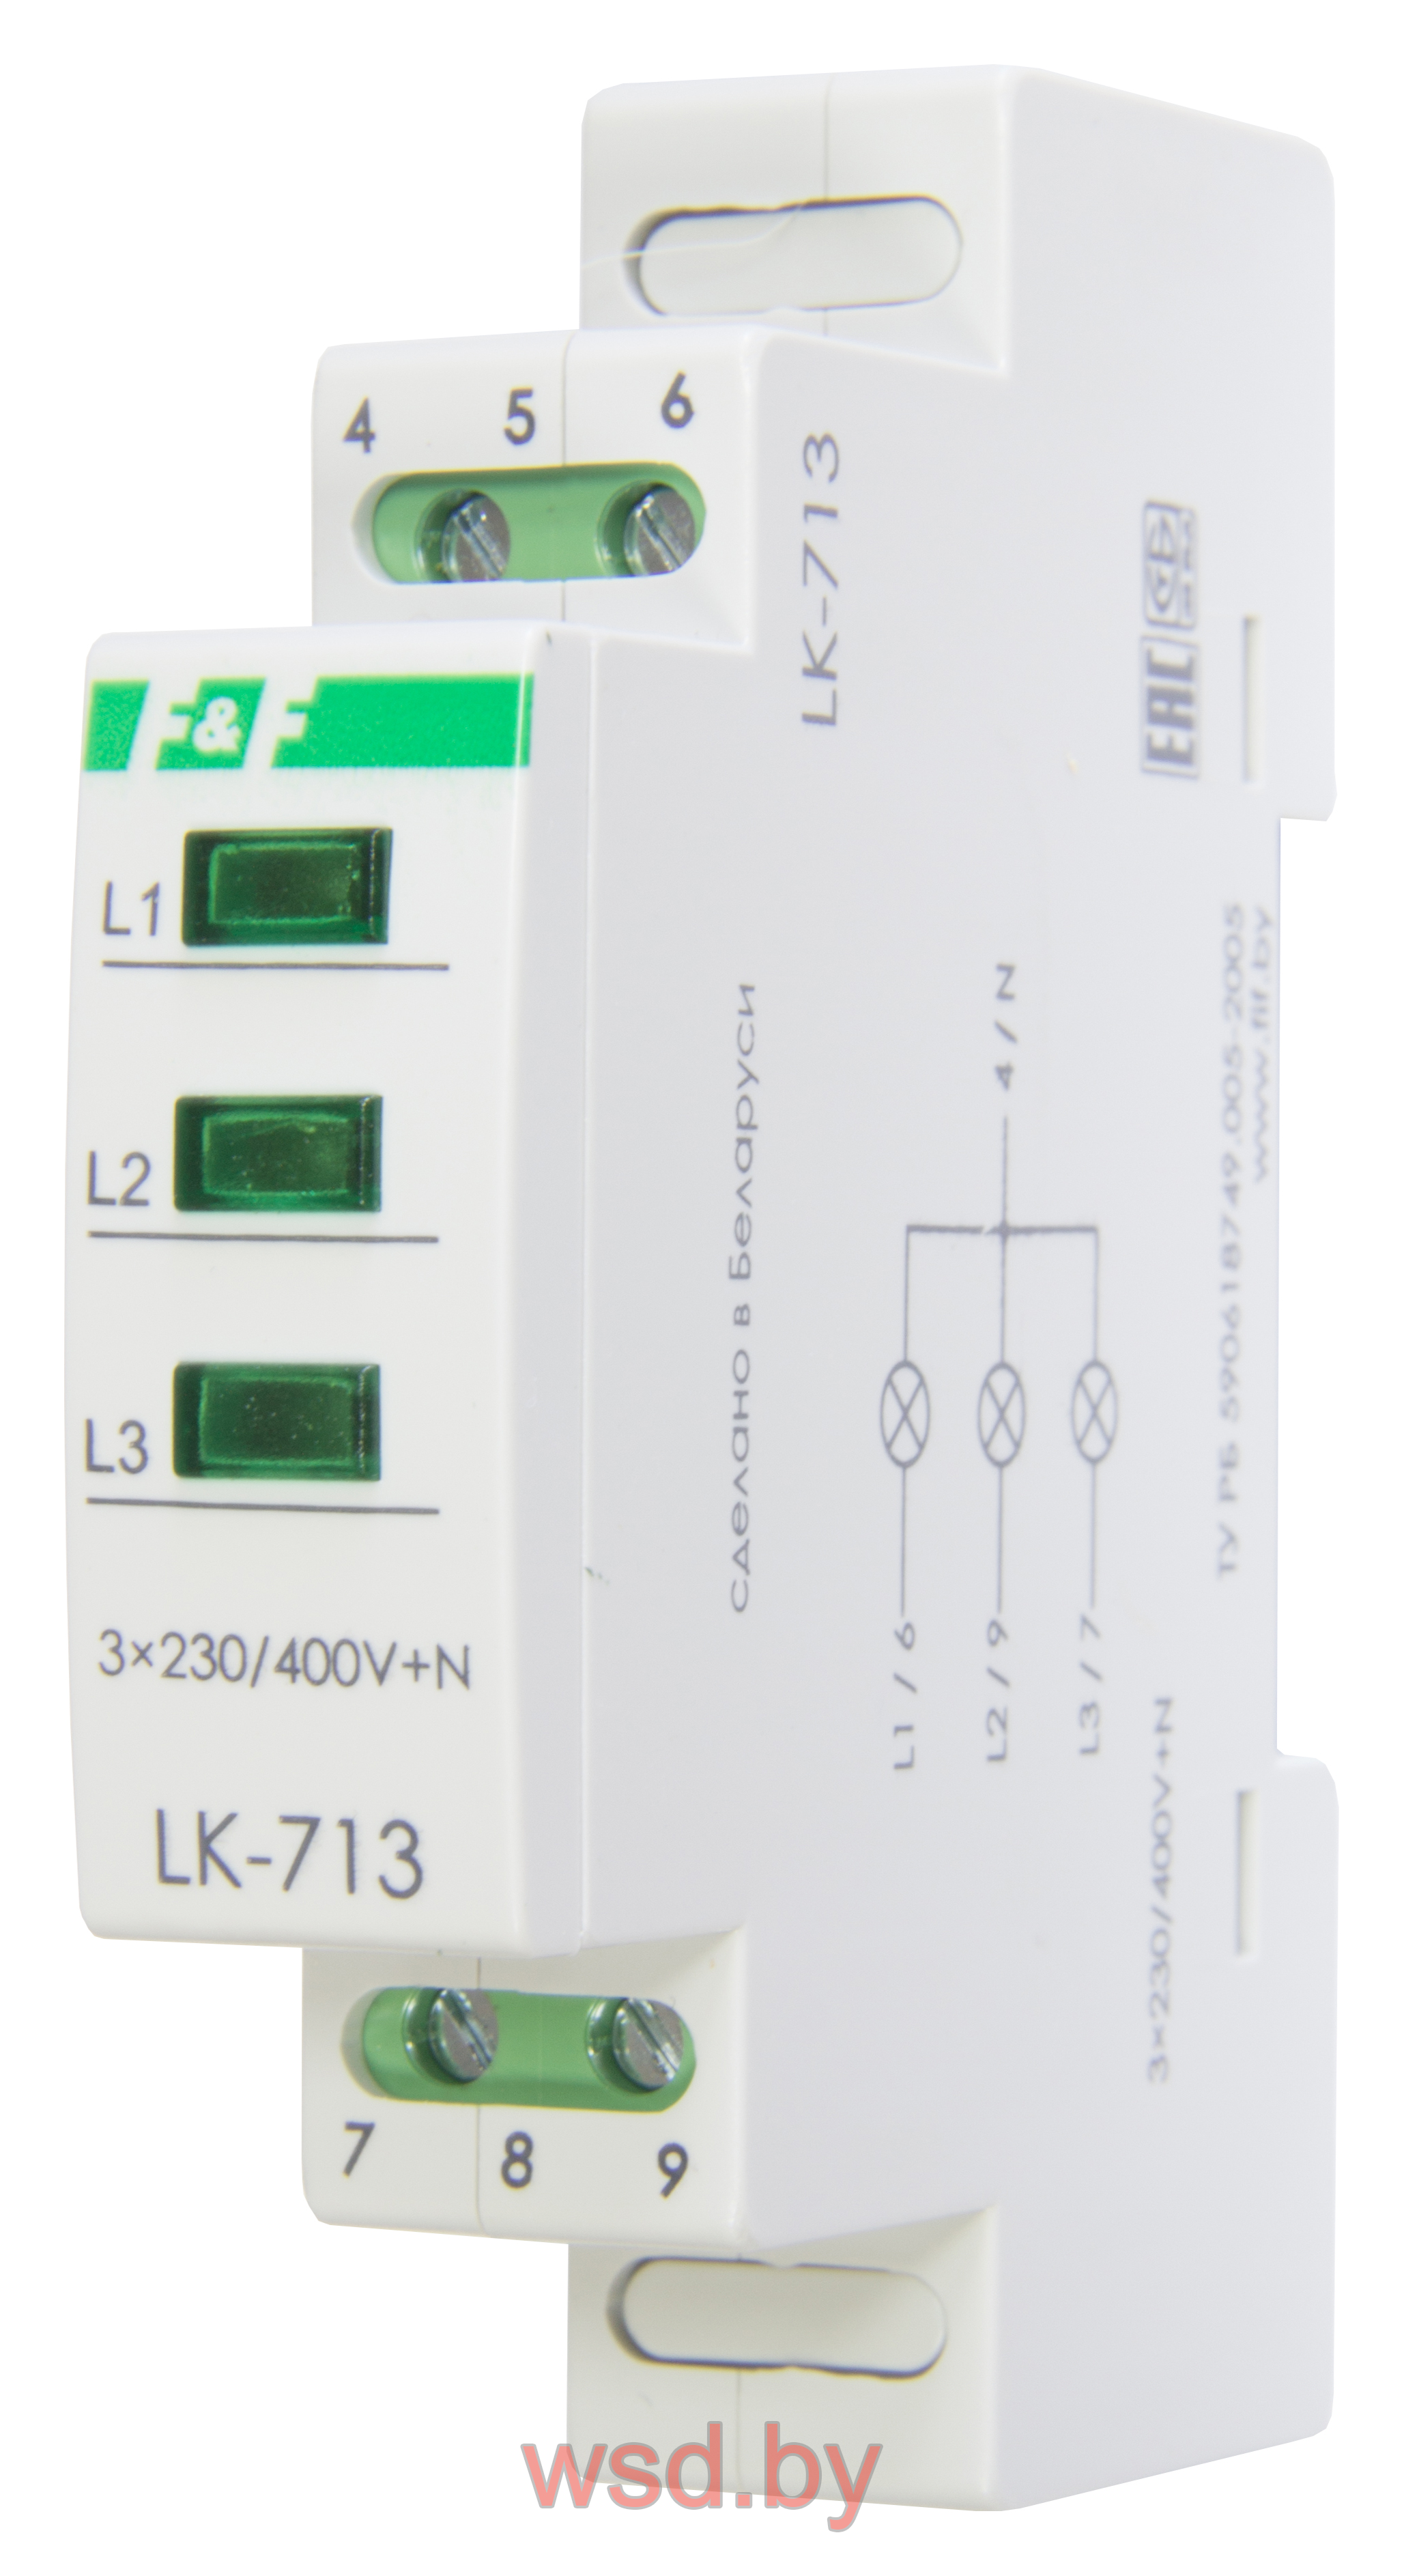 Указатель напряжения LK-713-RRR сигнализация наличия трех фаз, цвет КРАСНЫЙ-КРАСНЫЙ-КРАСНЫЙ,1 модуль, монтаж на DIN-рейке 3х400/230+N IP20